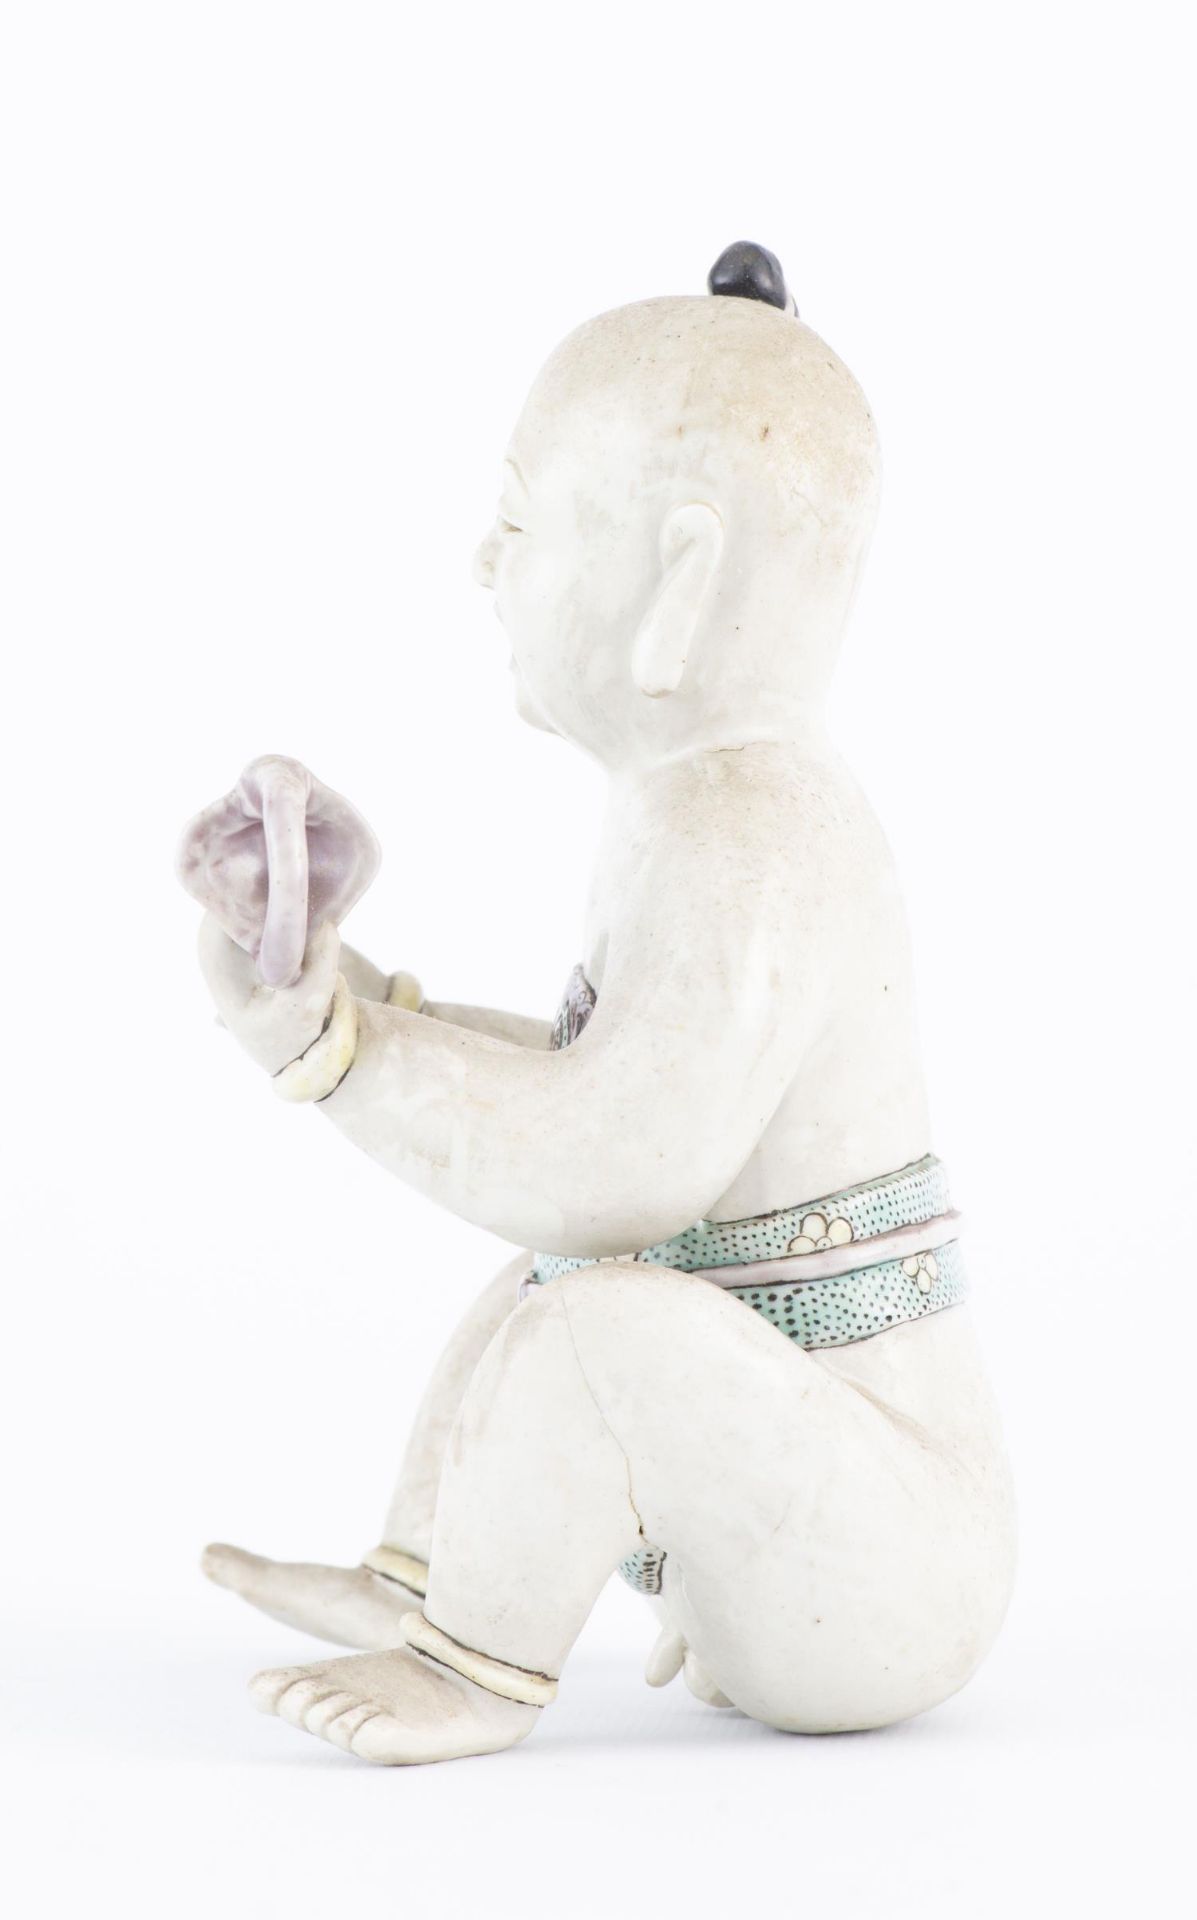 Statuette d'un Hoho (jeune garçon) assis en biscuit - Image 8 of 18